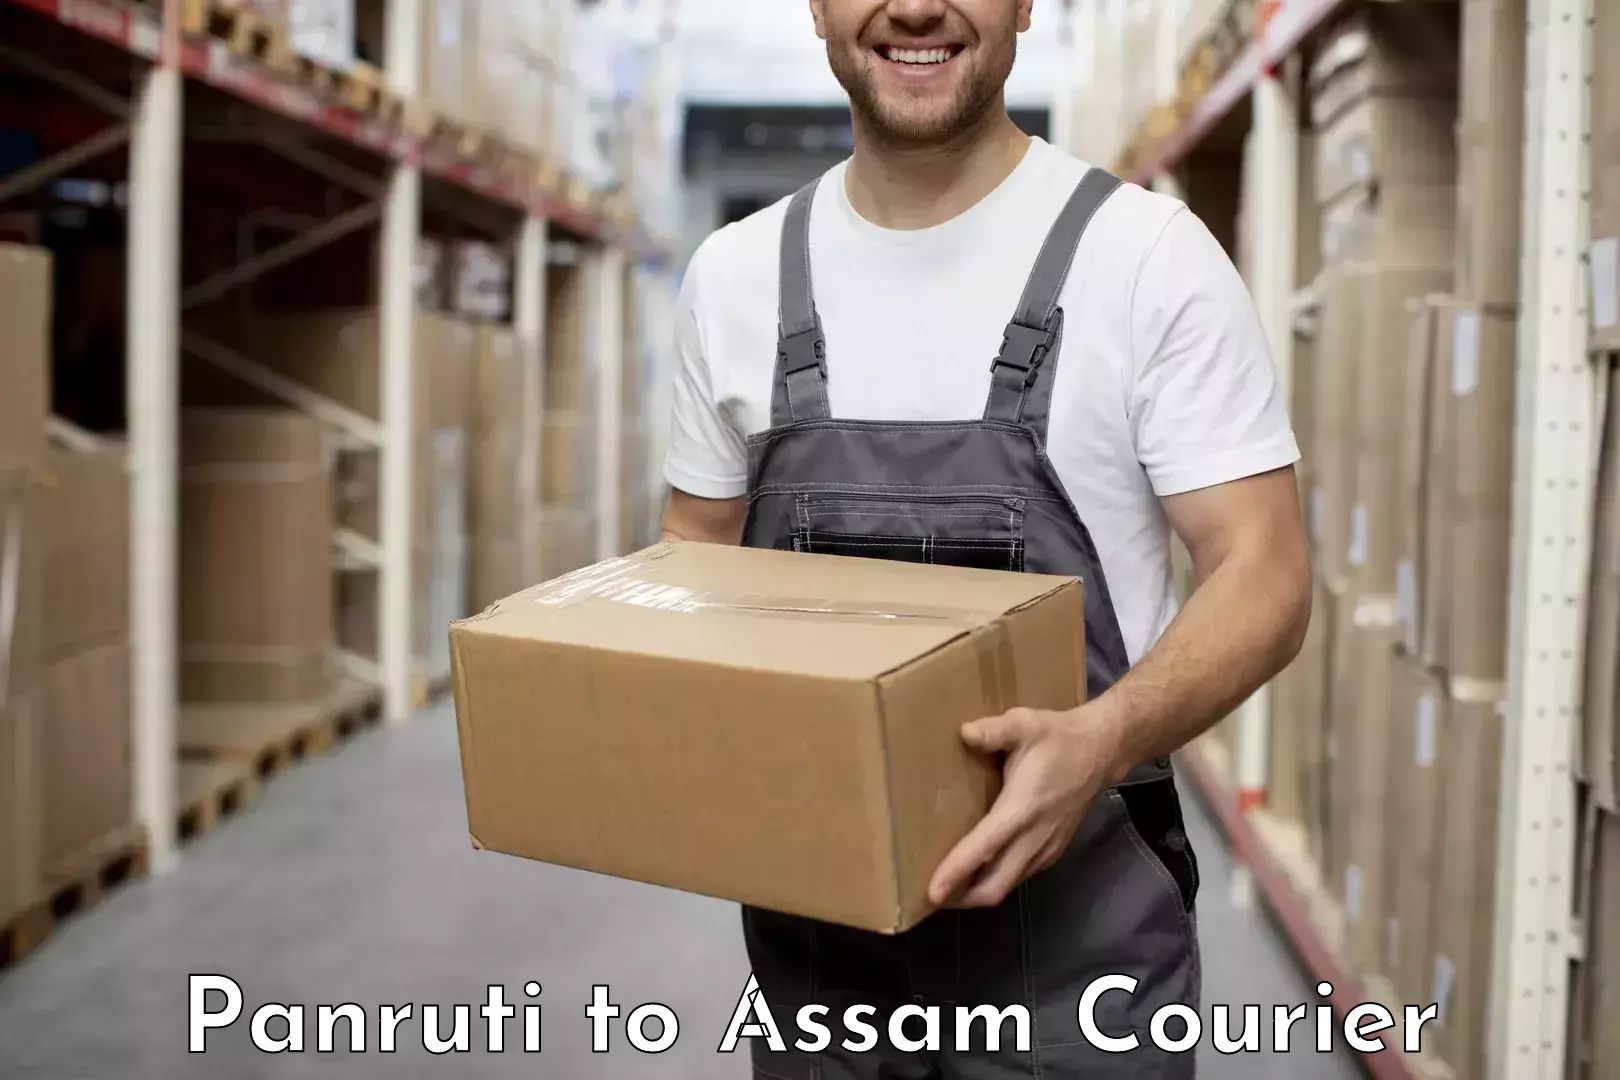 Easy return solutions Panruti to Assam